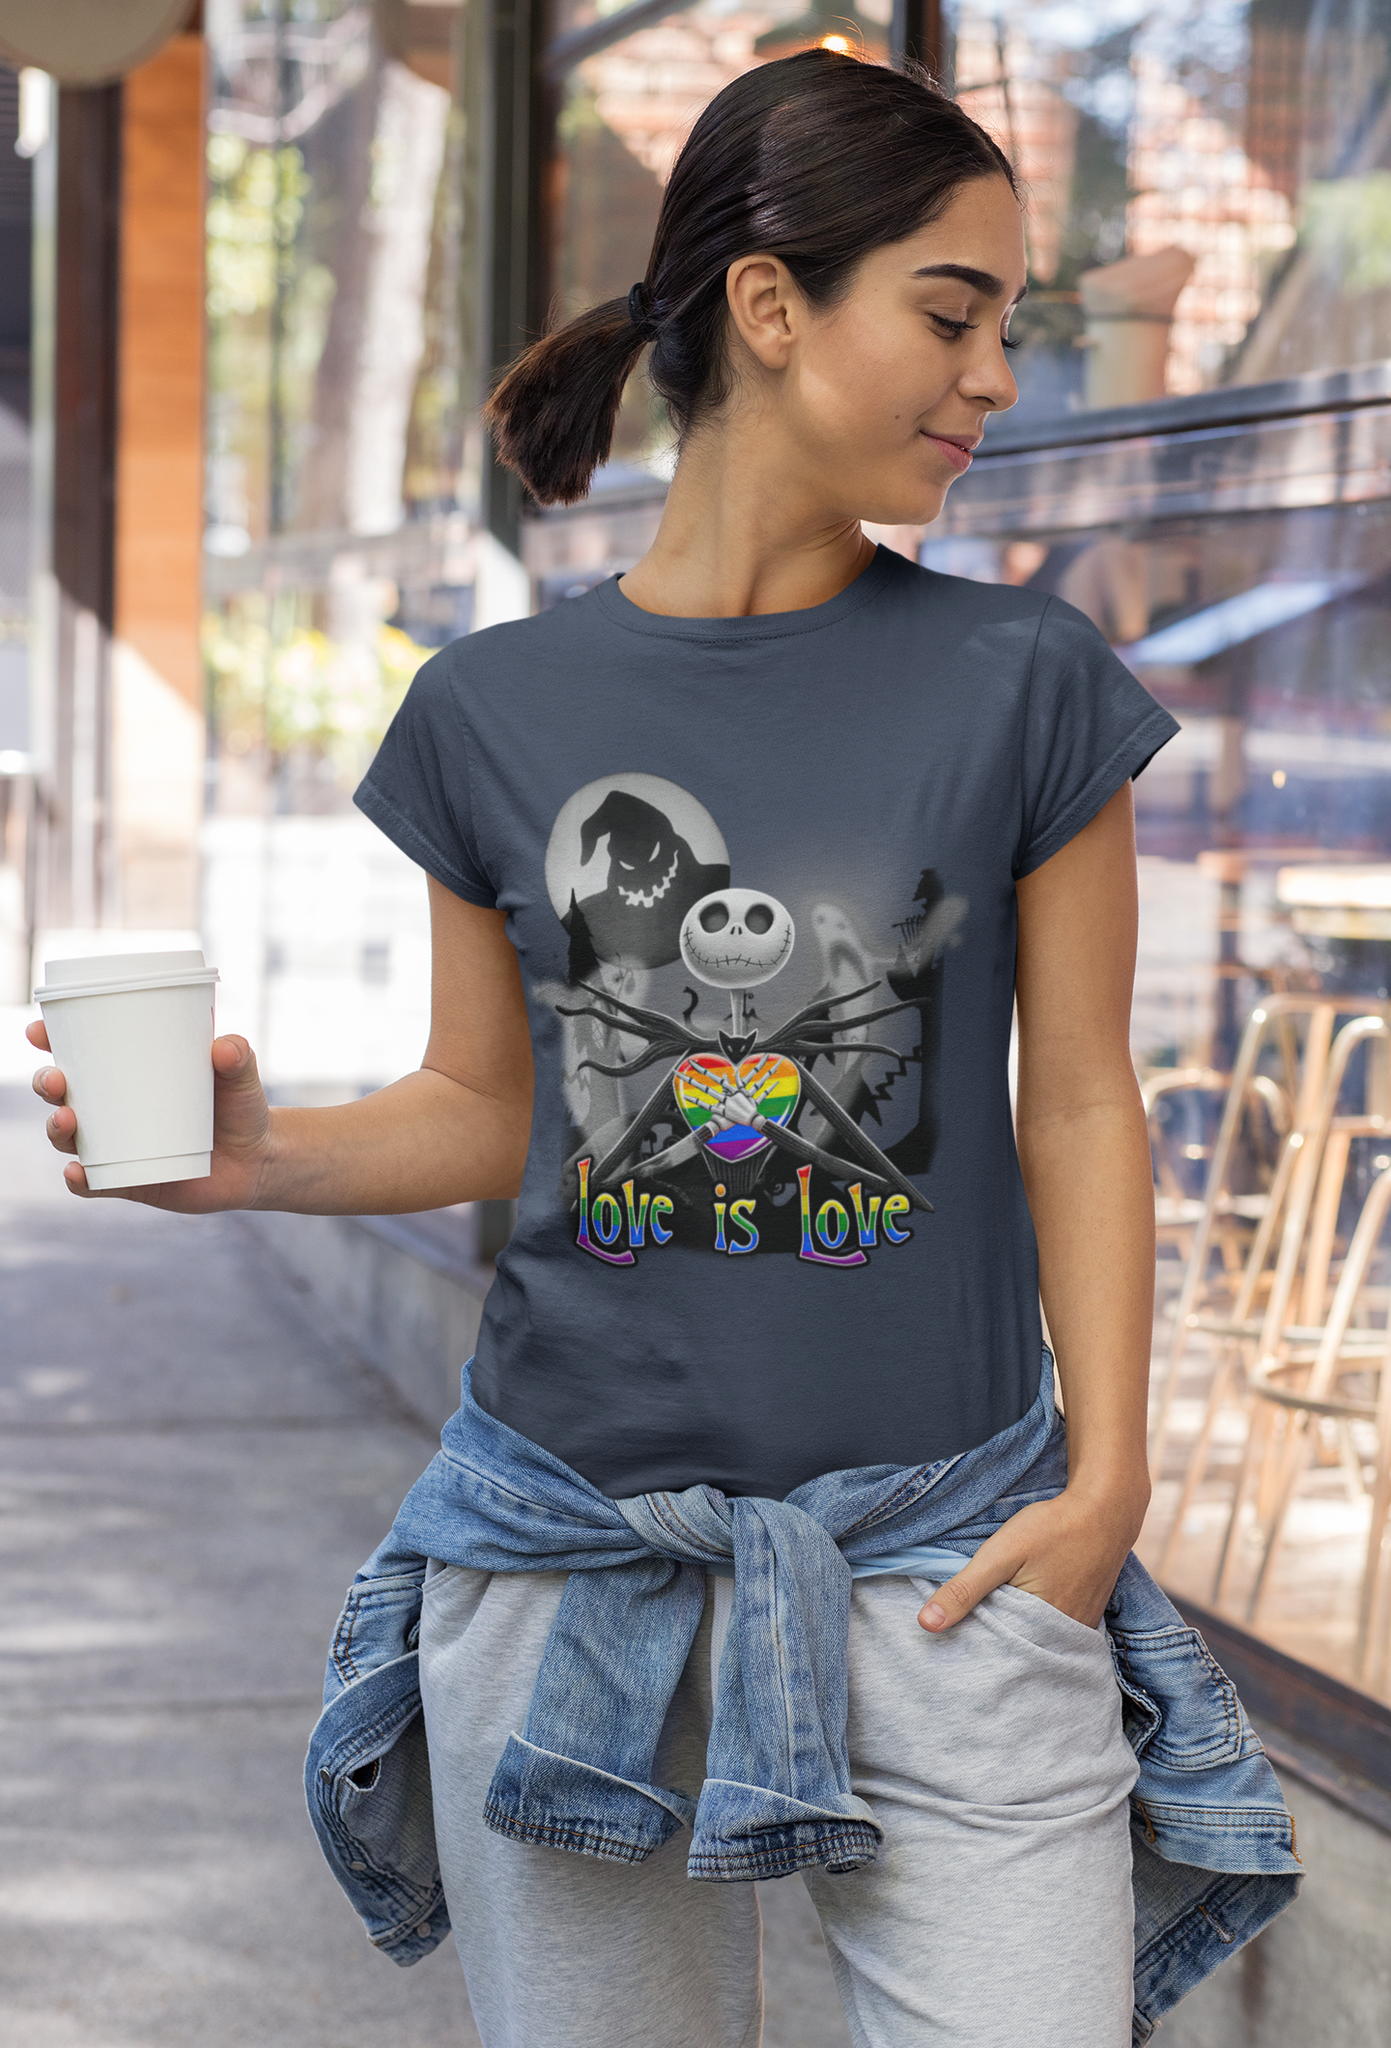 Nightmare Before Christmas T Shirt, LGBT Pride Love Is Love Tshirt, Jack Skellington Oogie Boogie T Shirt, Halloween Gifts